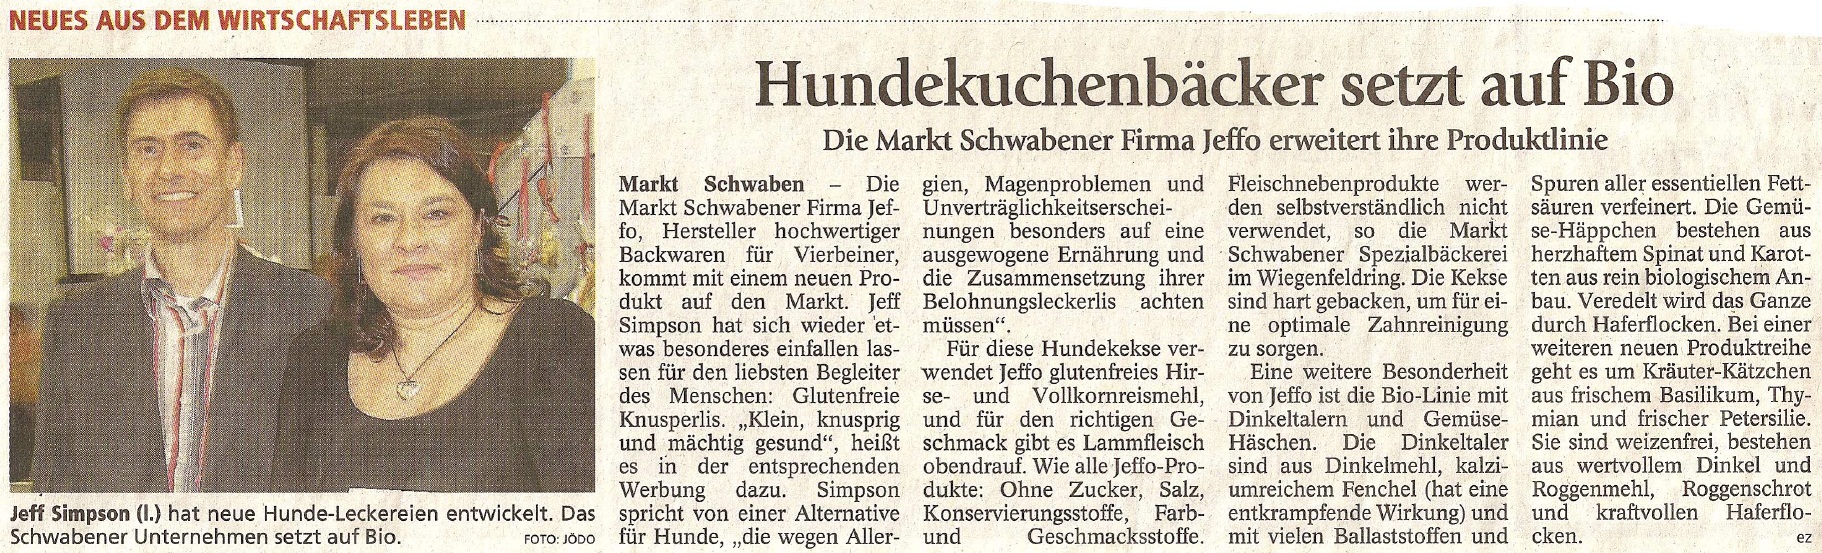 Presseschau Münchner Merkur